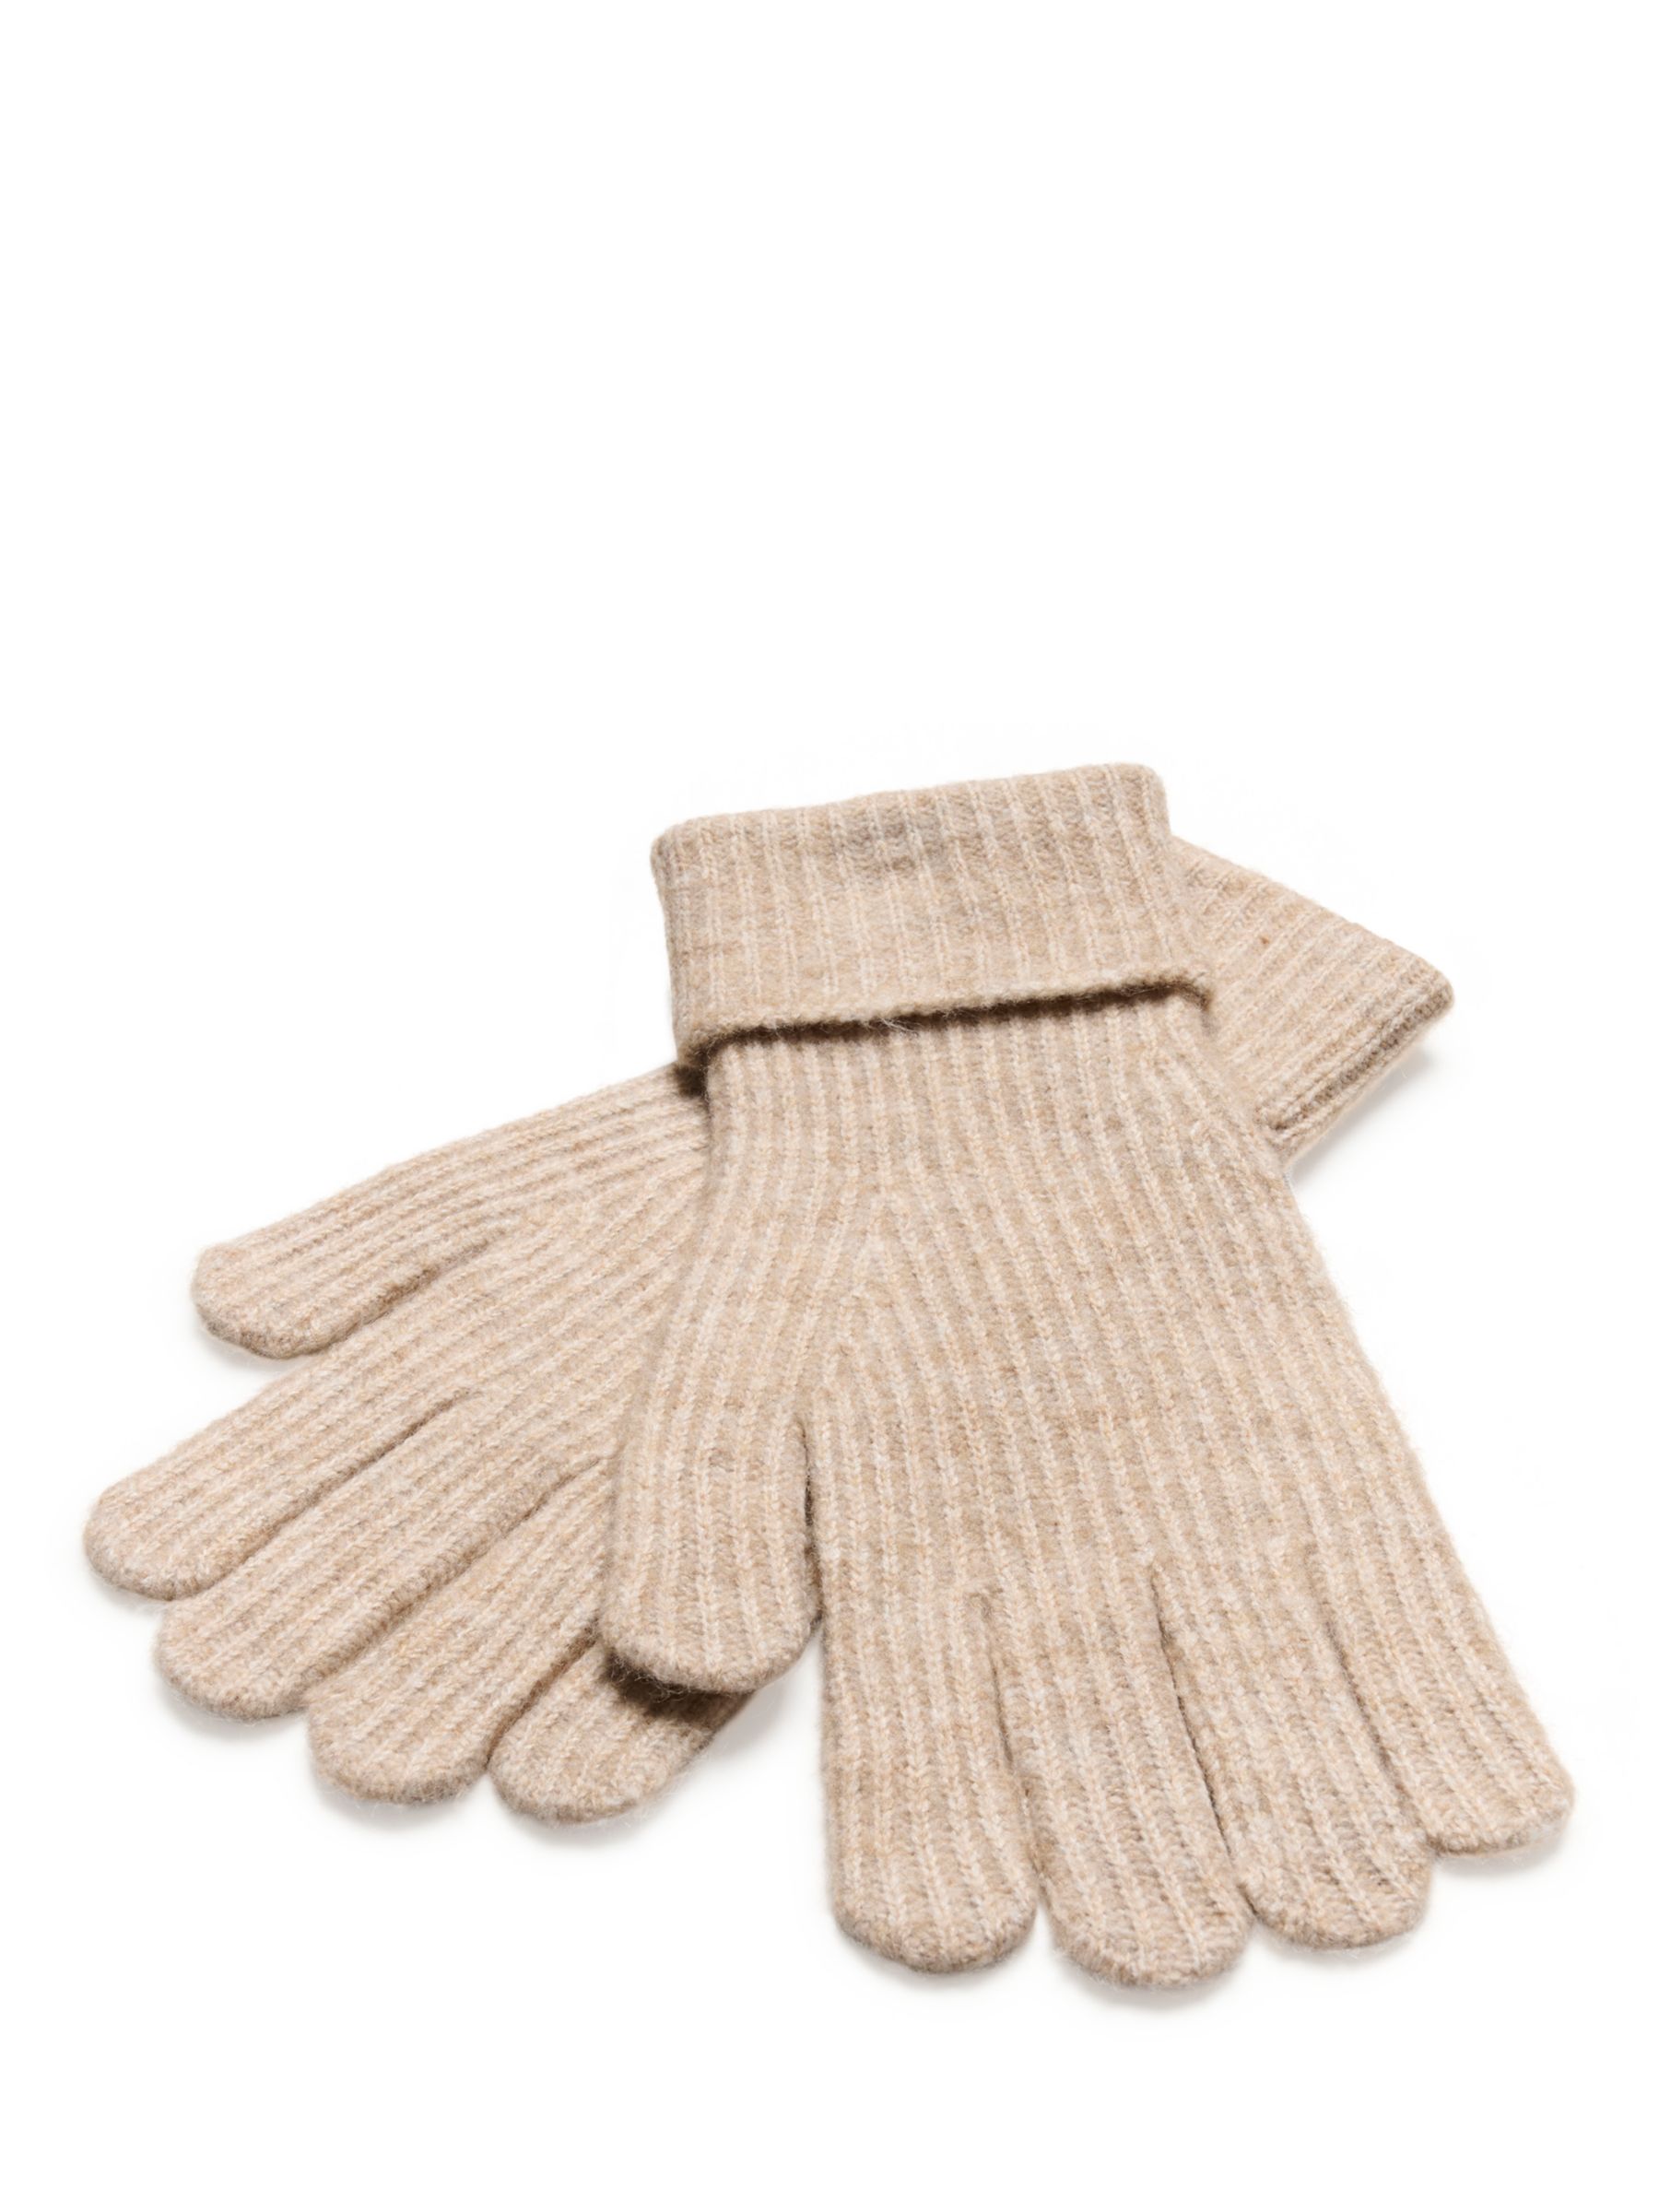 Buy KAFFE Marlene Rib Knit Gloves, Grey Melange Online at johnlewis.com